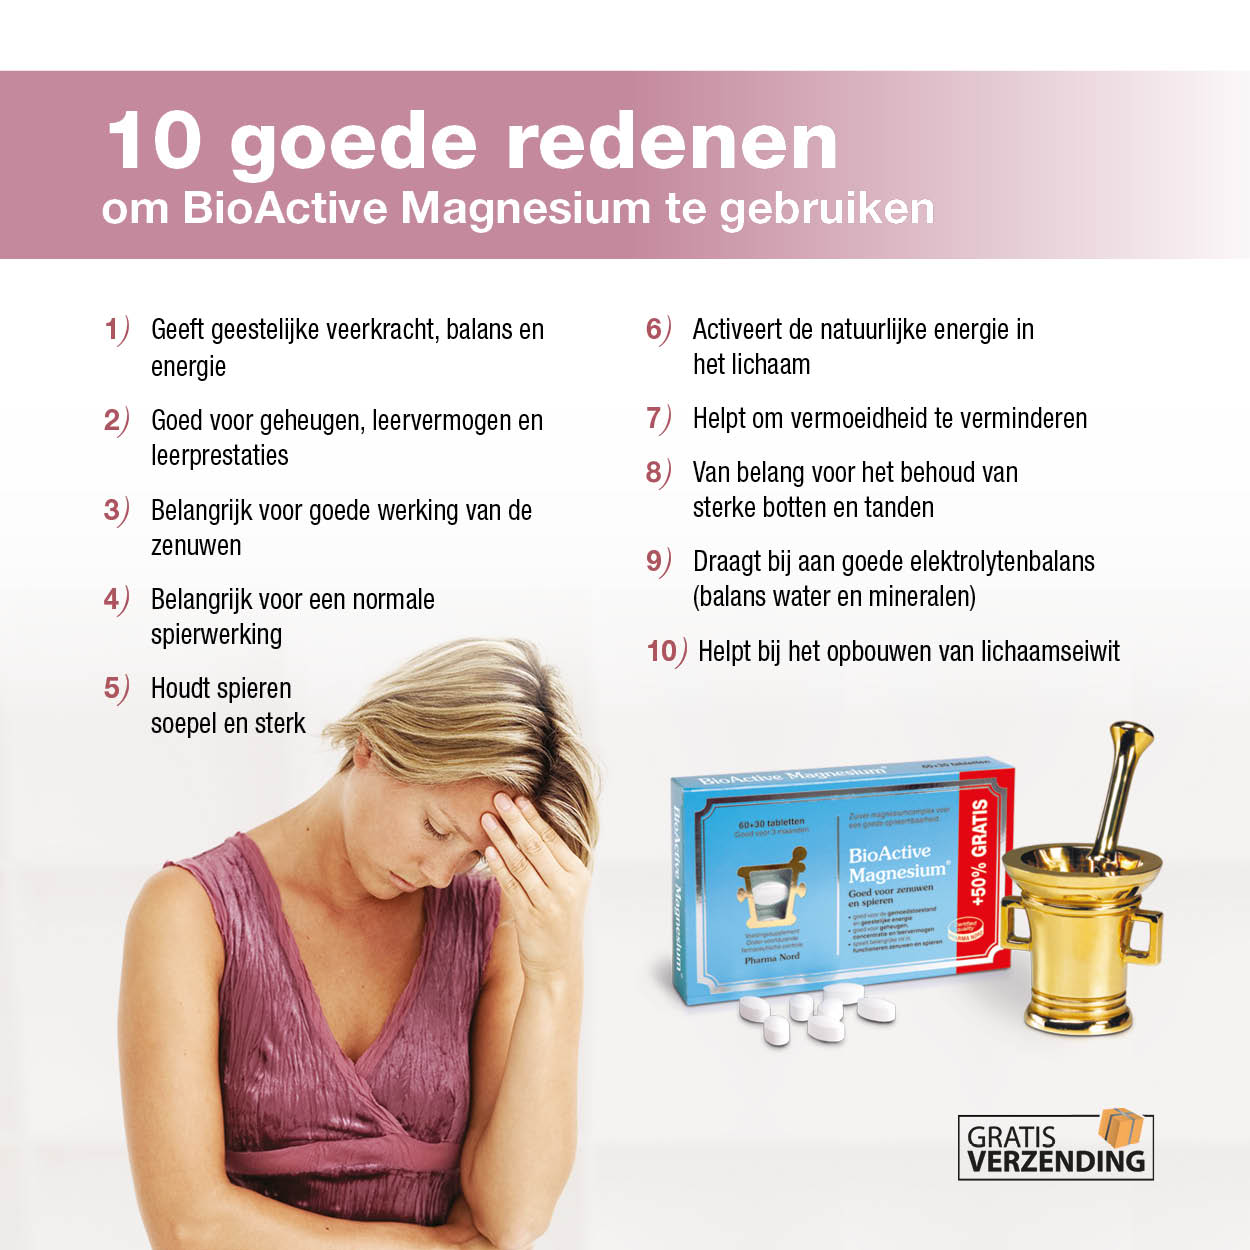 10 goede redenenen om BioActive Magnesium te gebruiken